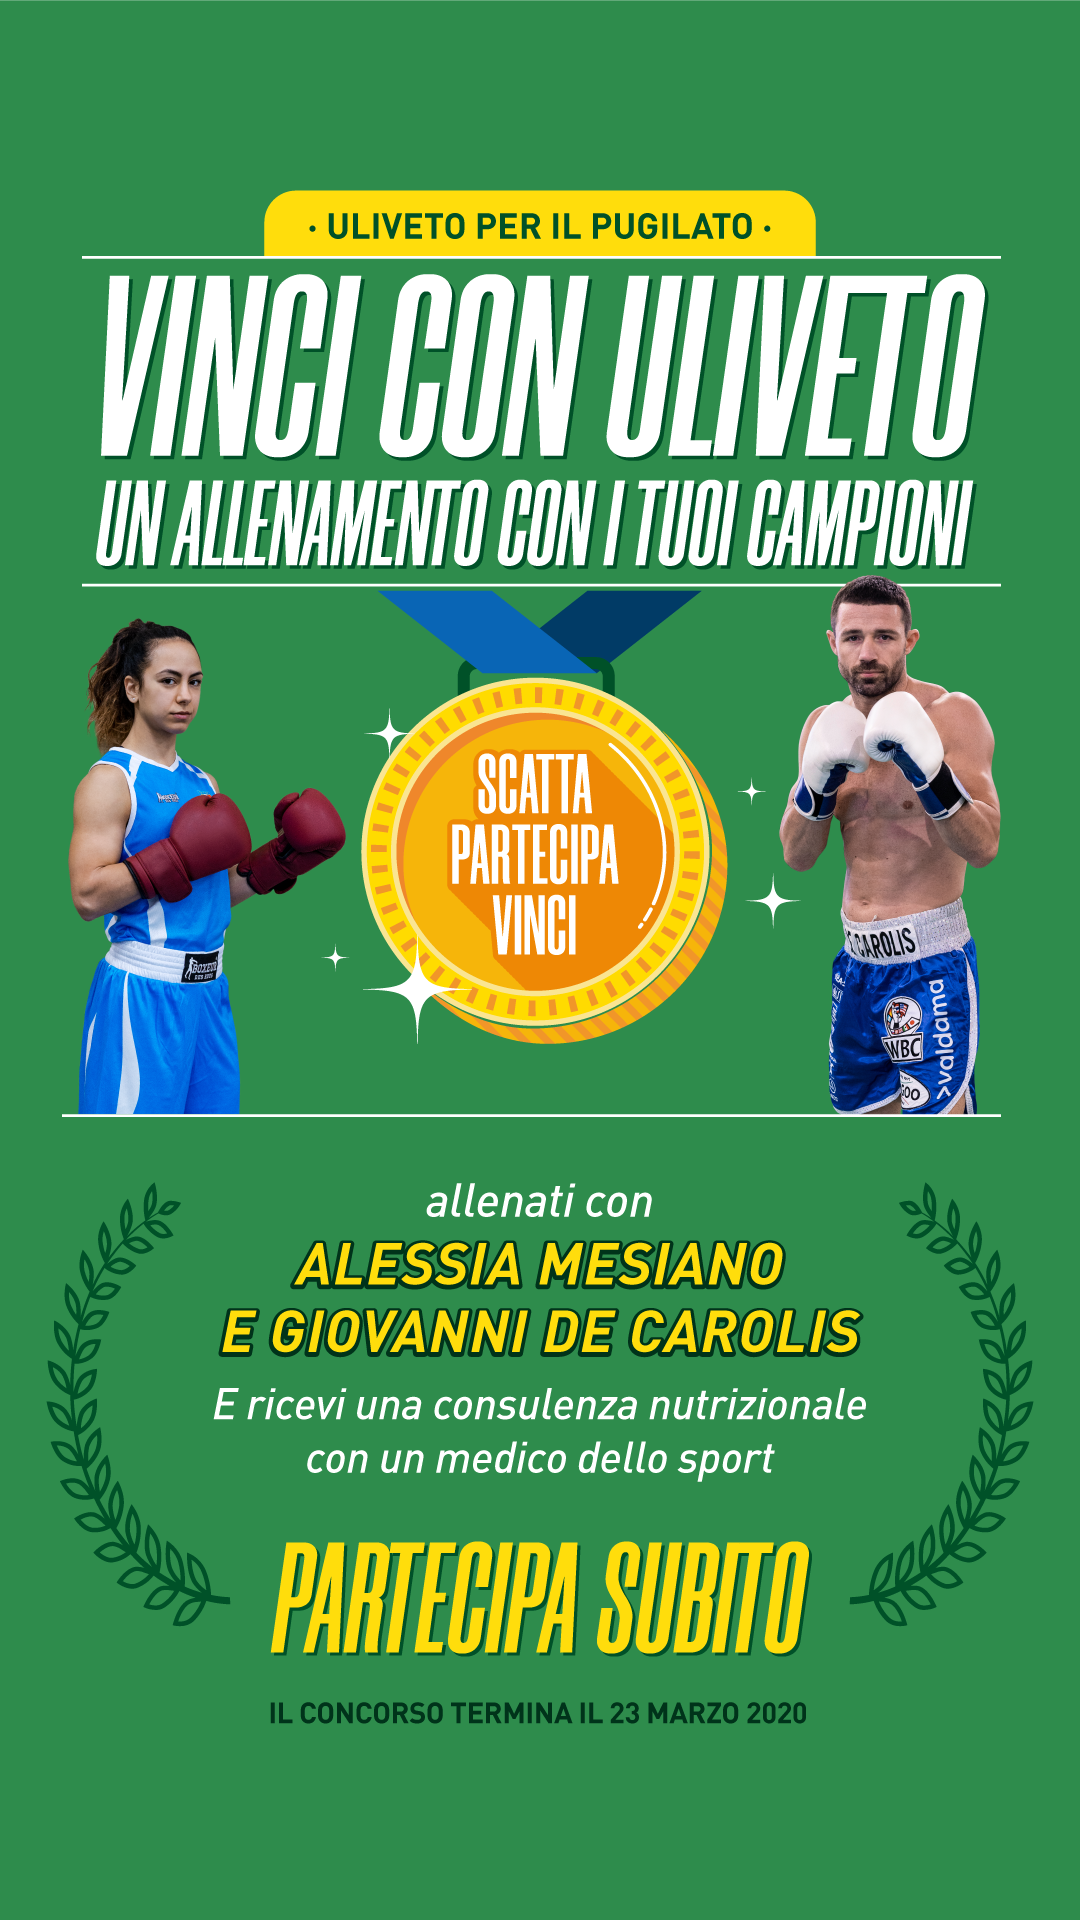 CONCORSO ACQUA ULIVETO - Vinci una giornata con i Campioni Alessia Mesiano e Giovanni De Carolis